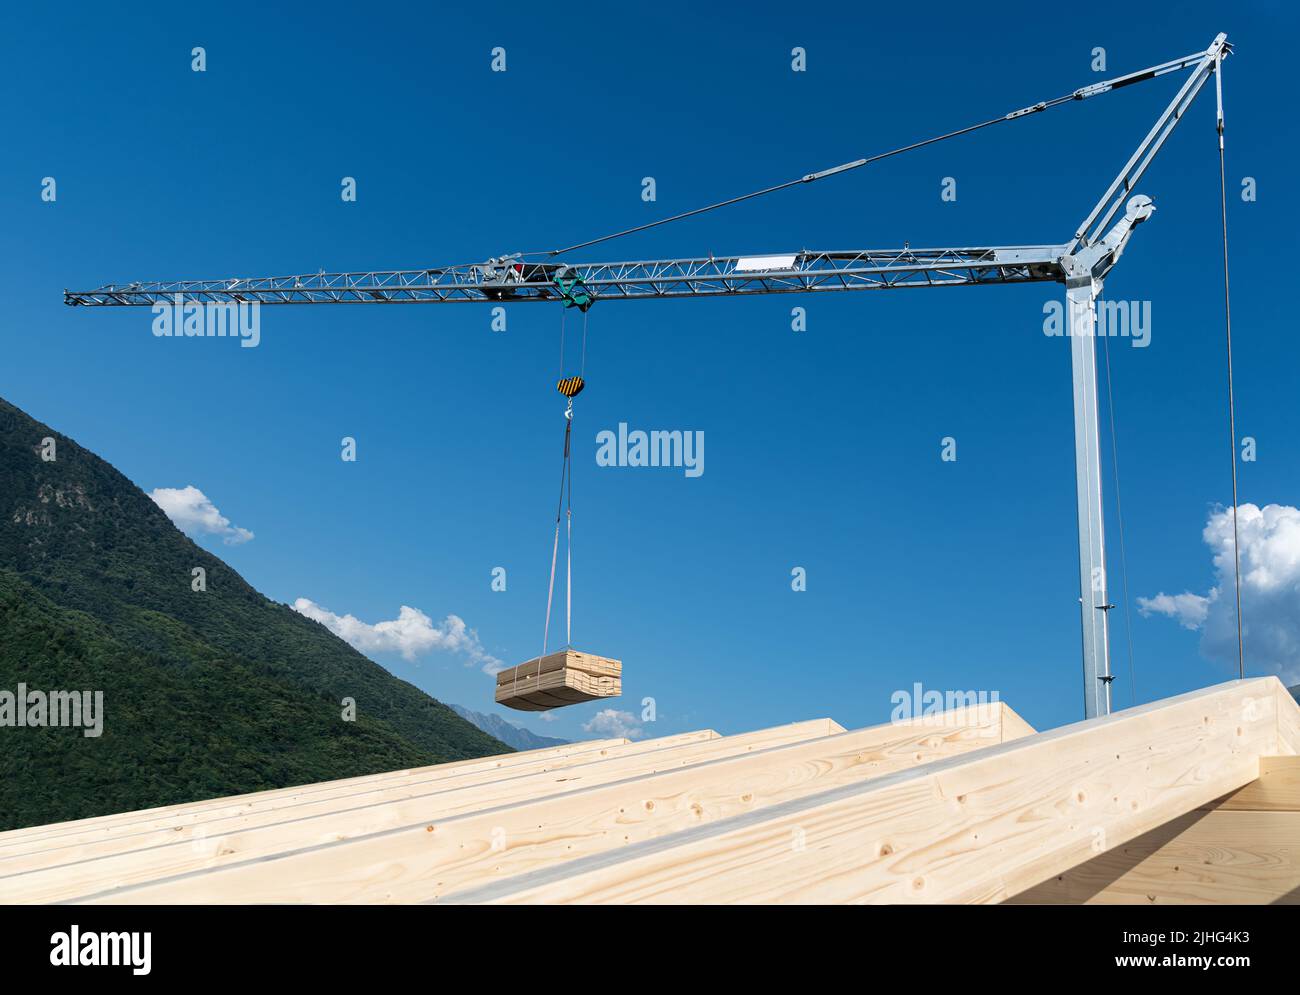 Grue de construction avec charge suspendue de planche en bois sur un ciel bleu Banque D'Images